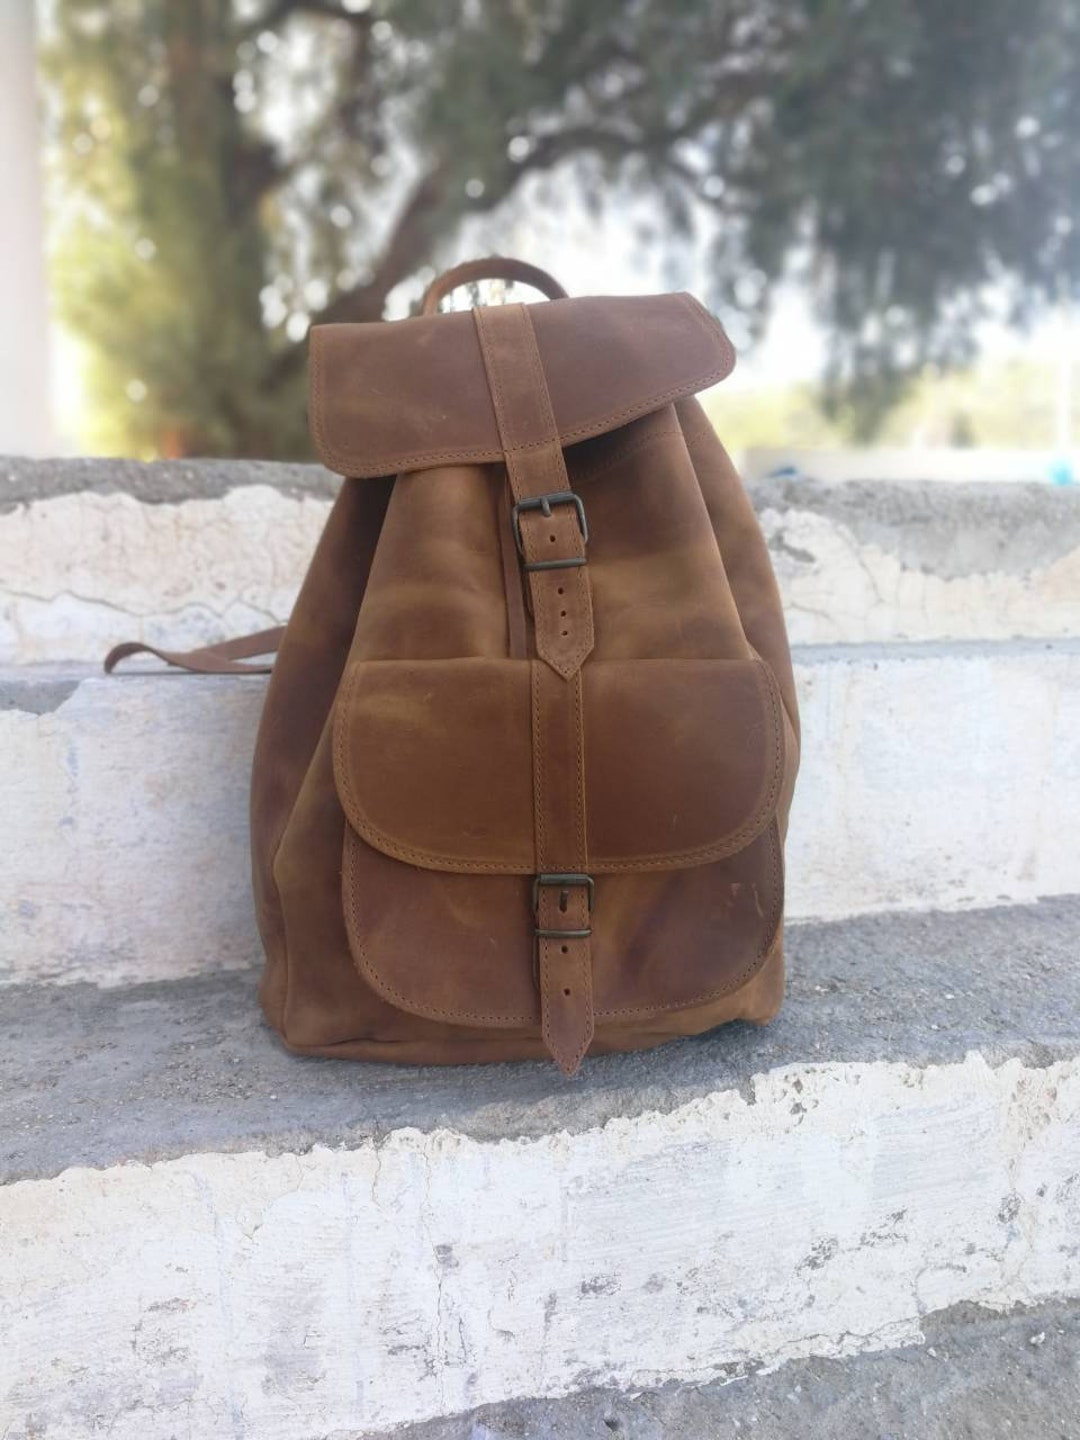 Greek Leather Backpack Handmade Bag Unisex Bag Women - Etsy